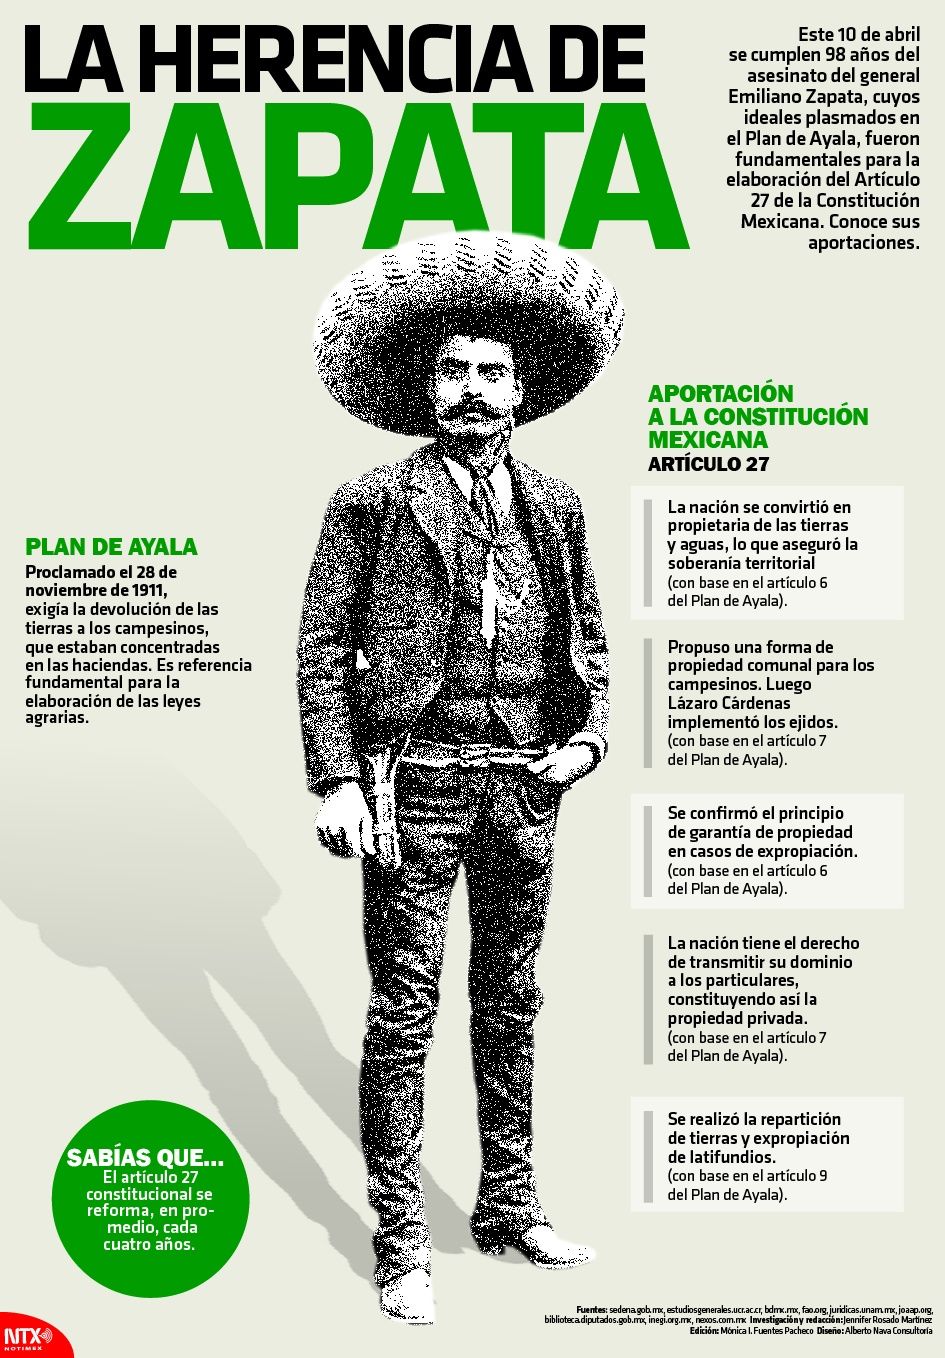 ¿Que quería lograr Zapata